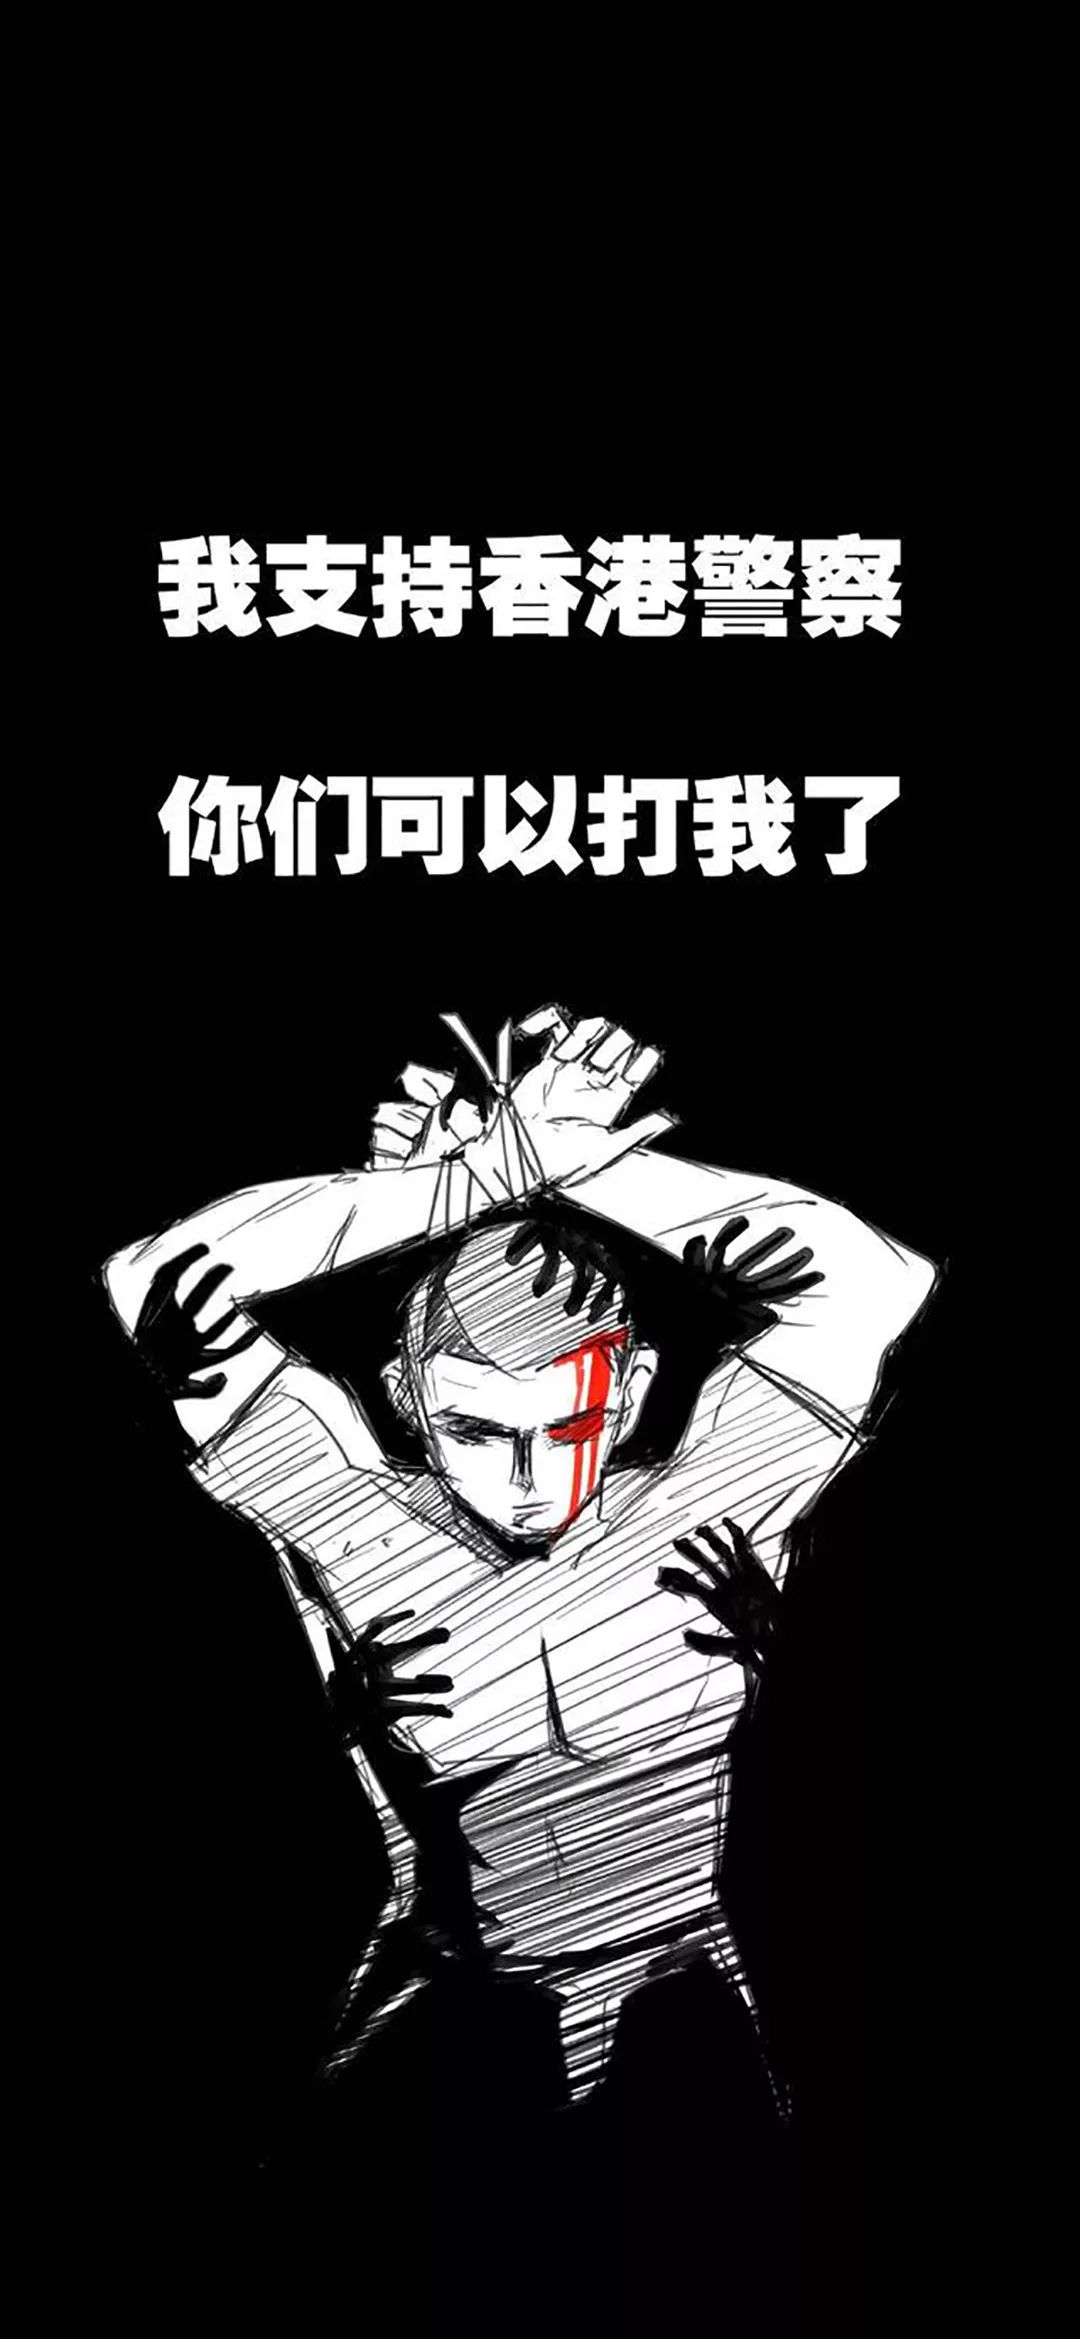 抖音热门超火壁纸丨我支持香港警察 你们可以打我了 头像壁纸网名 微信公众号文章阅读 Wemp